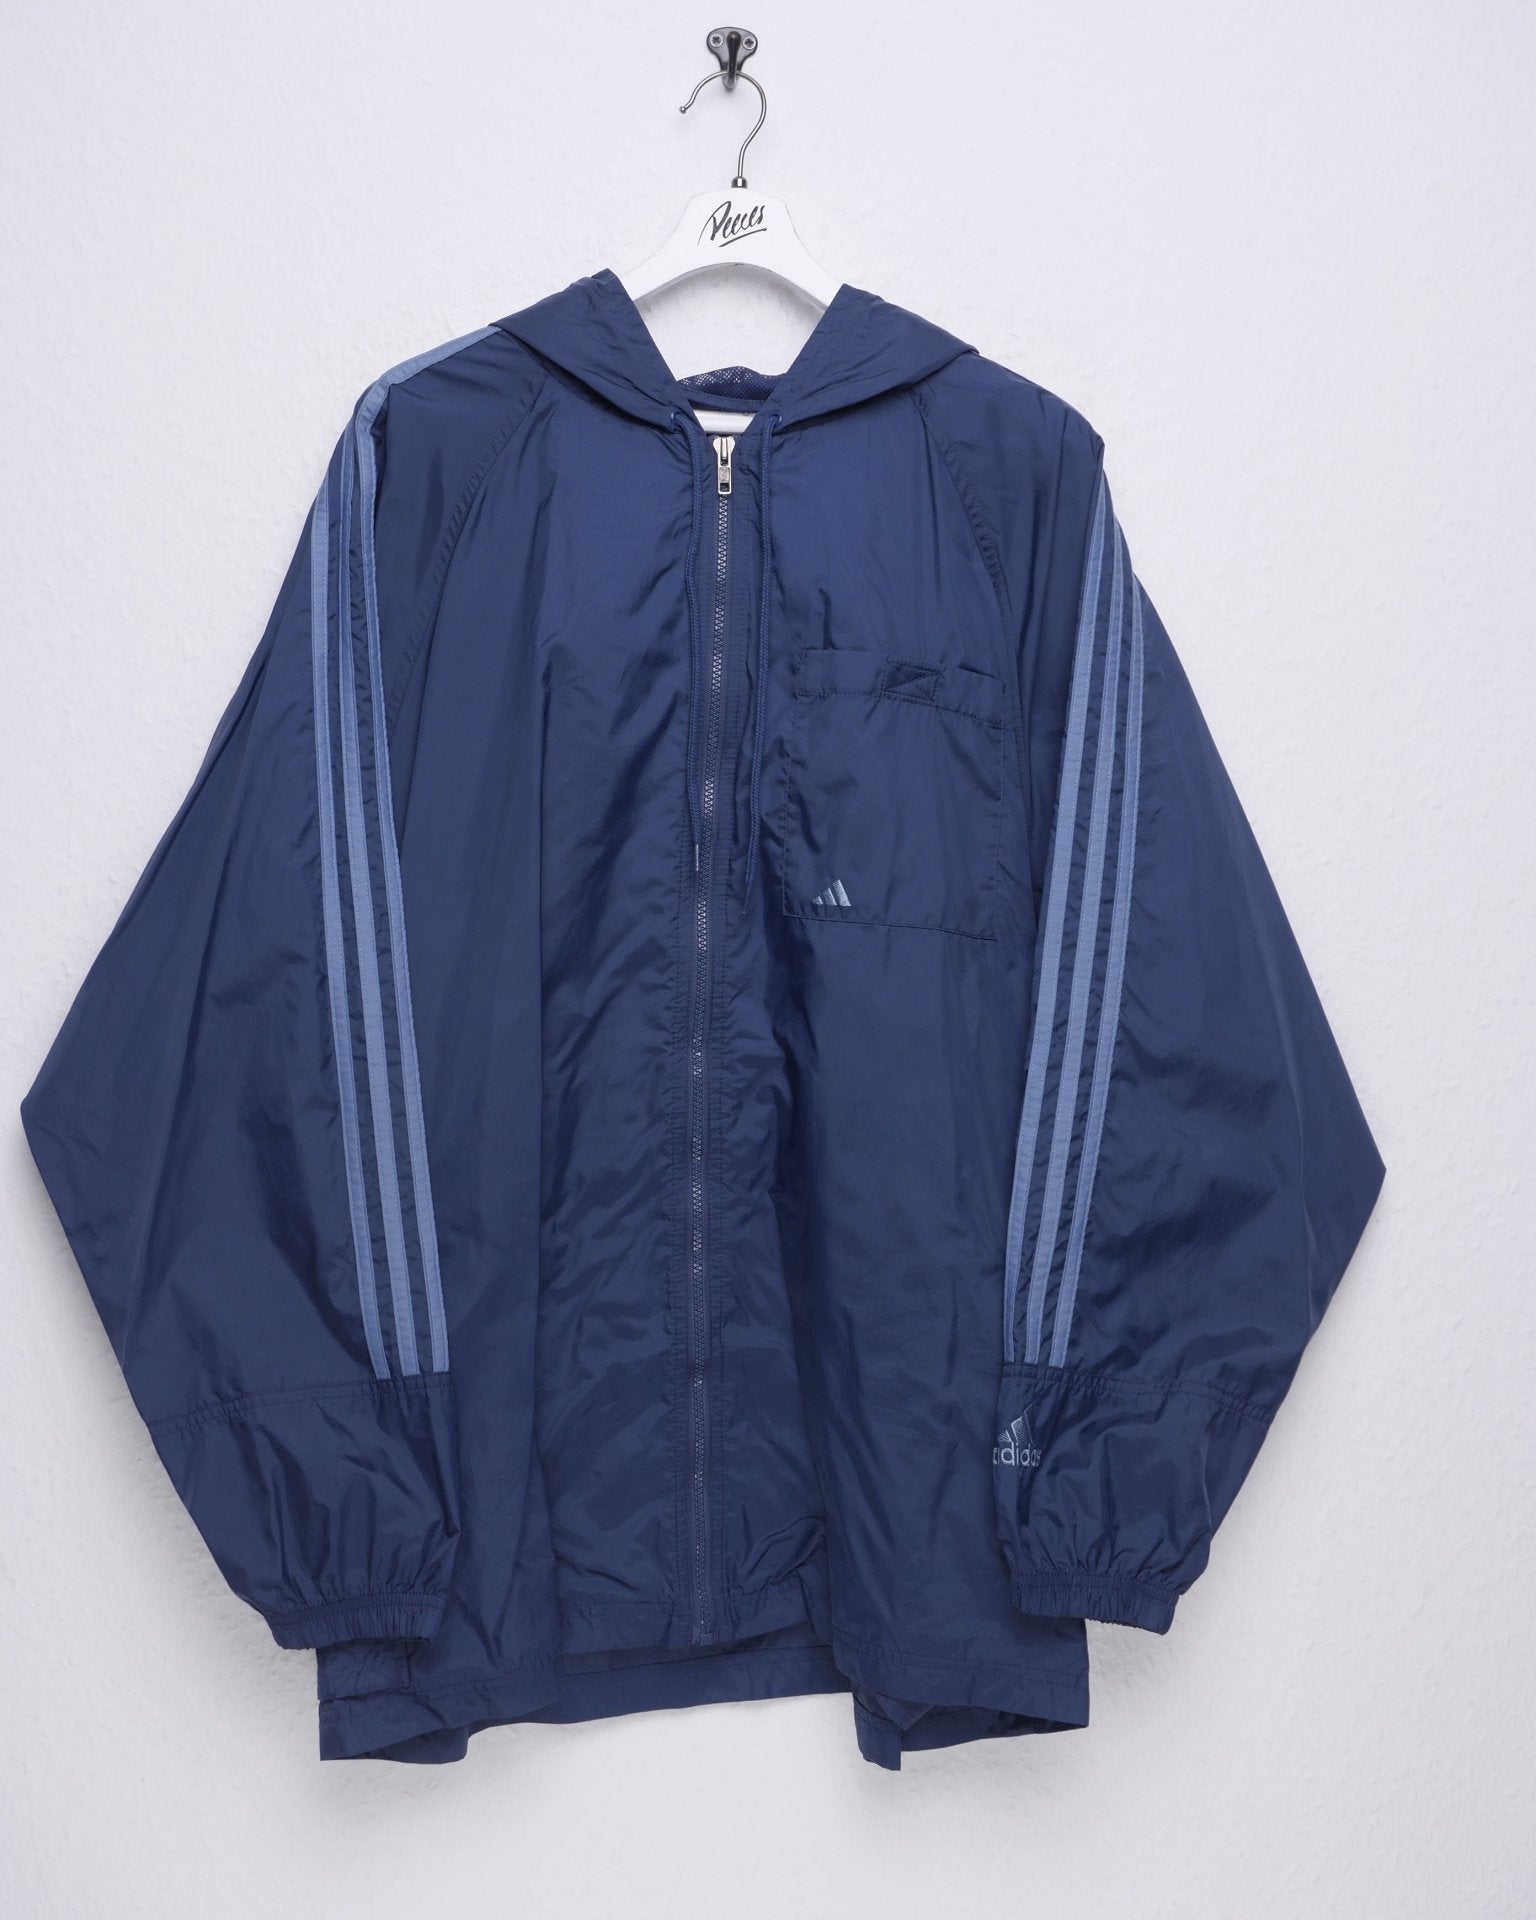 Adidas big embroidered Logo blue Vintage Track Jacke - Peeces